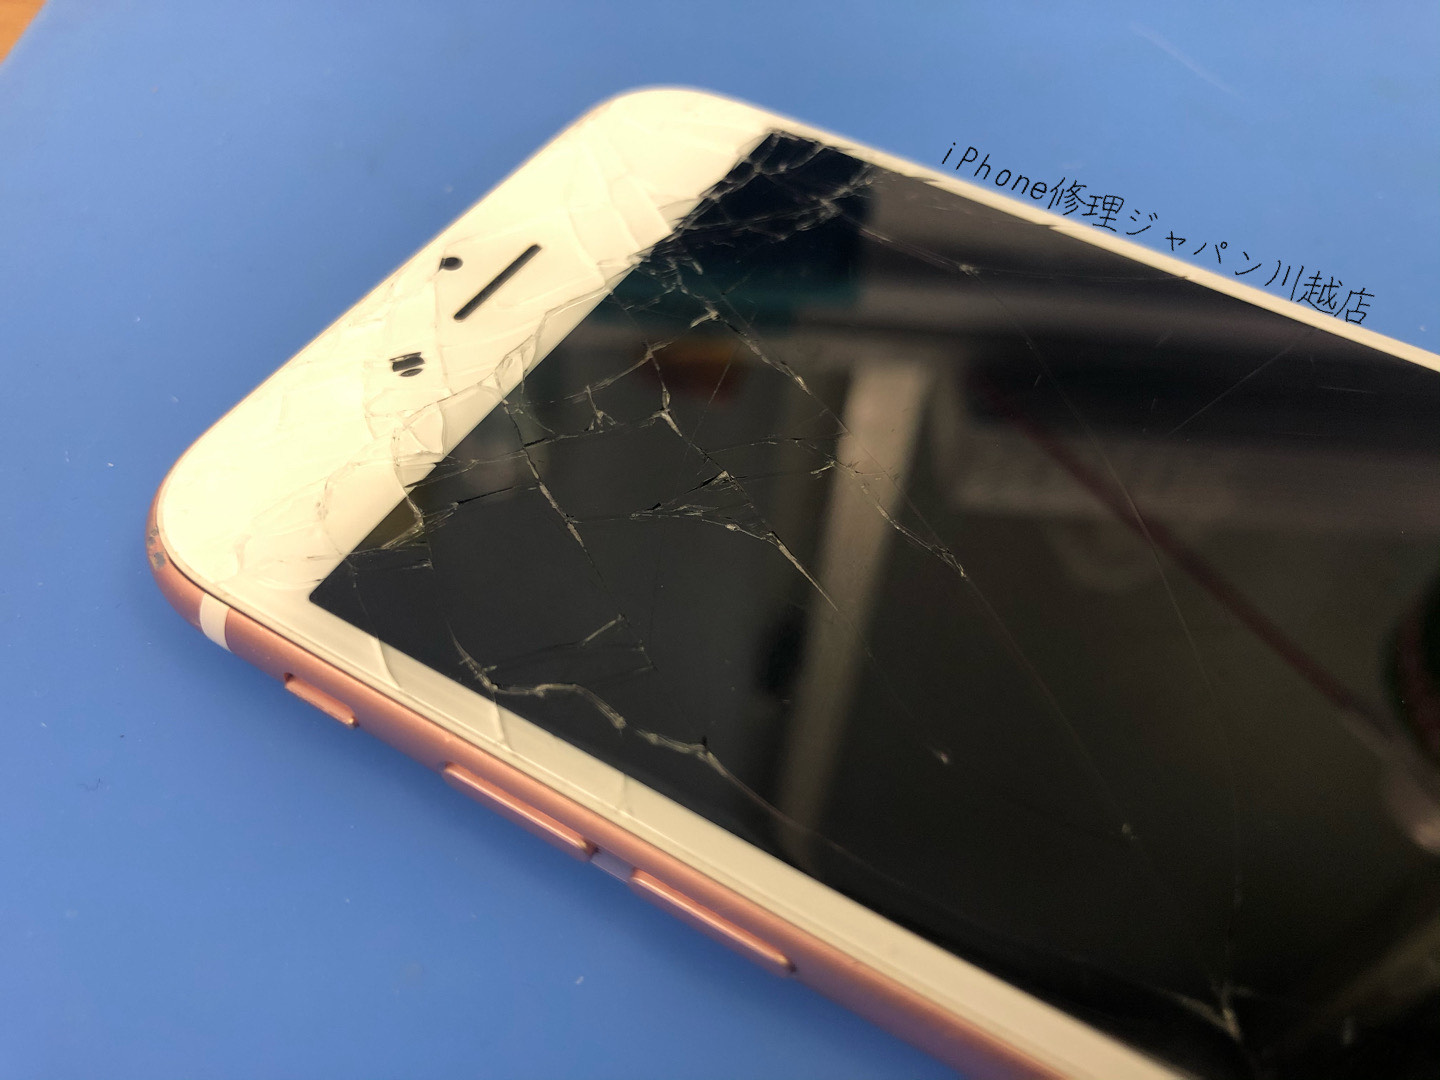 Iphoneのガラス割れの応急処置 早めに修理してくださいね Iphone 修理 ジャパン 川越店 スタッフブログ